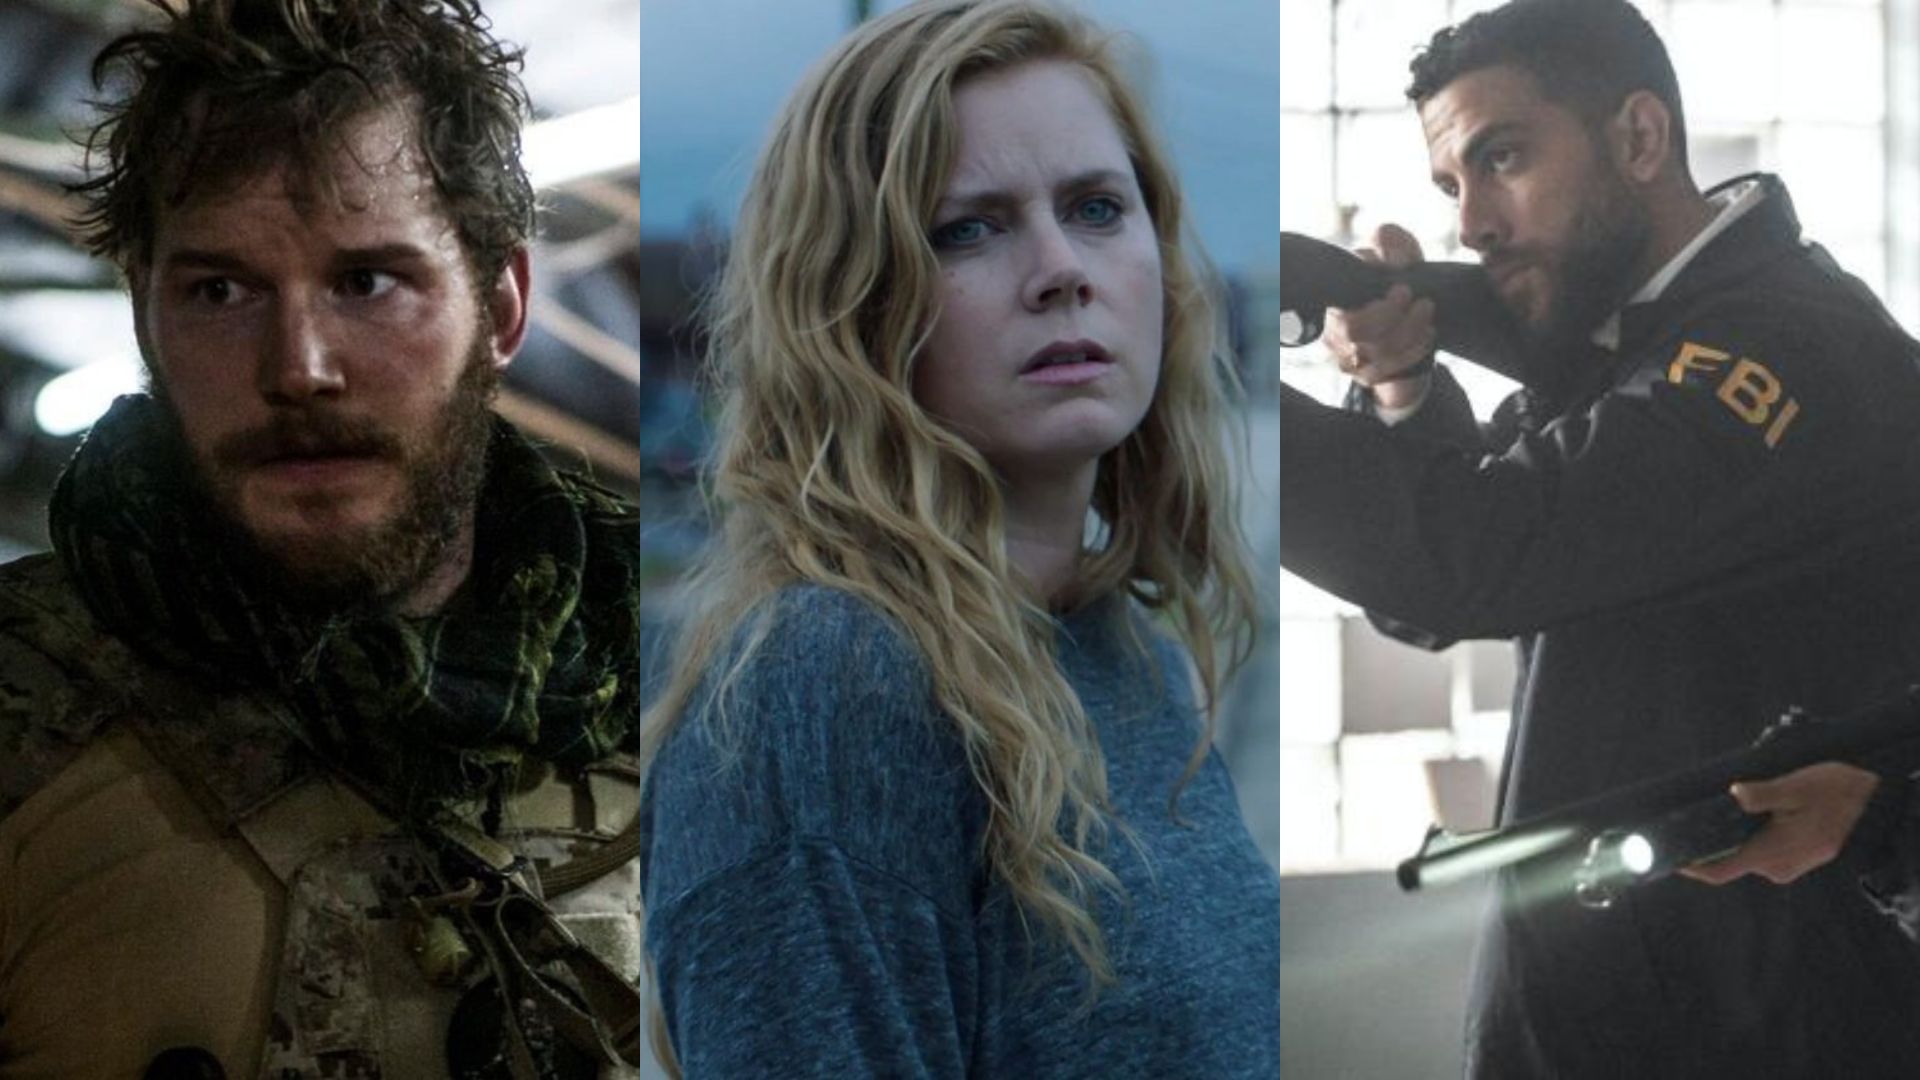 5 séries de terror para maratonar na Netflix neste fim de semana